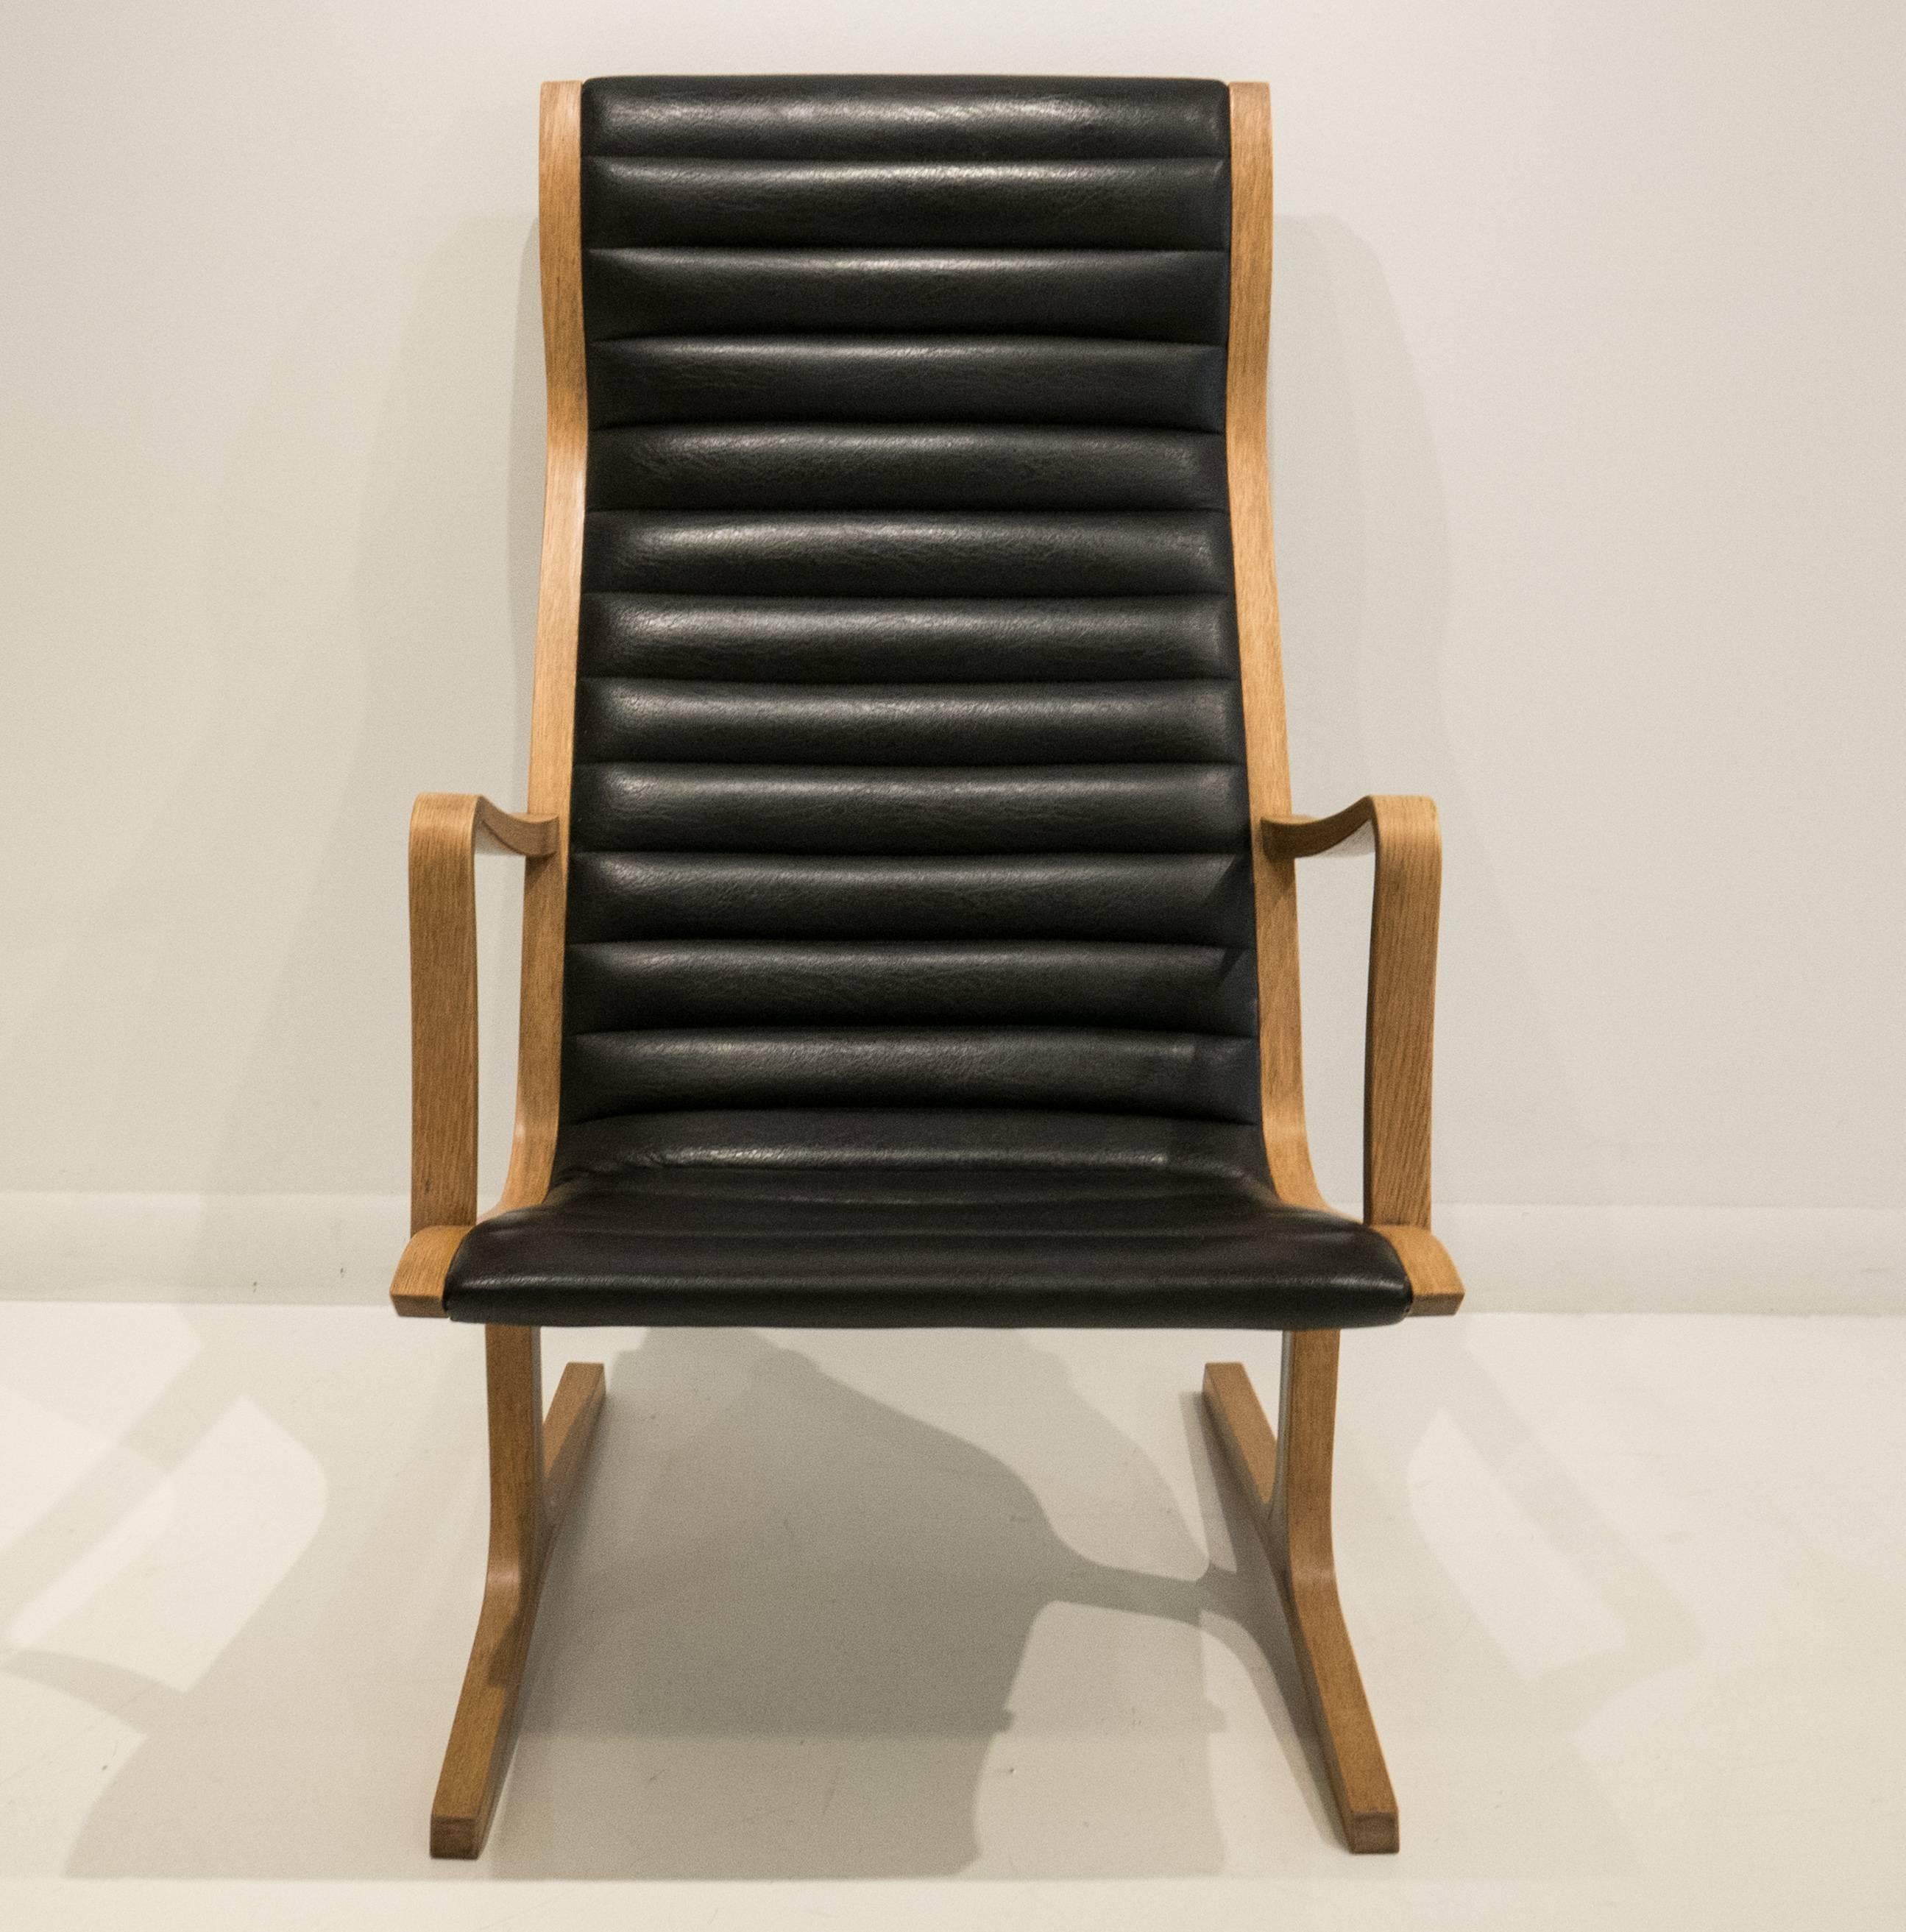 Japanese Heron Chair with Footrest by Mitsumasa Sugasawa